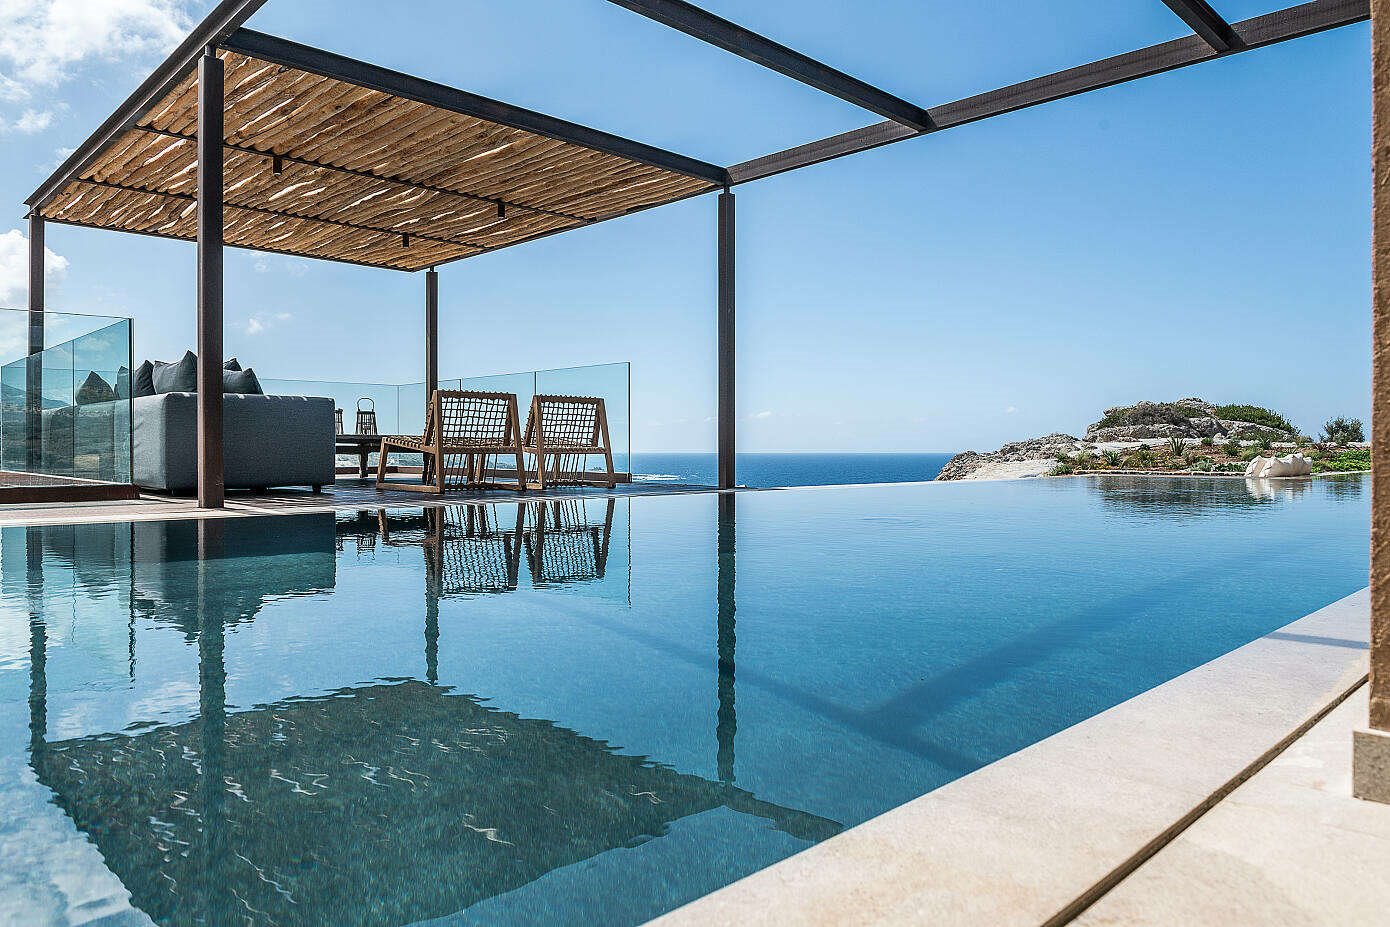 Casa de vacaciones en Grecia piscina infinita